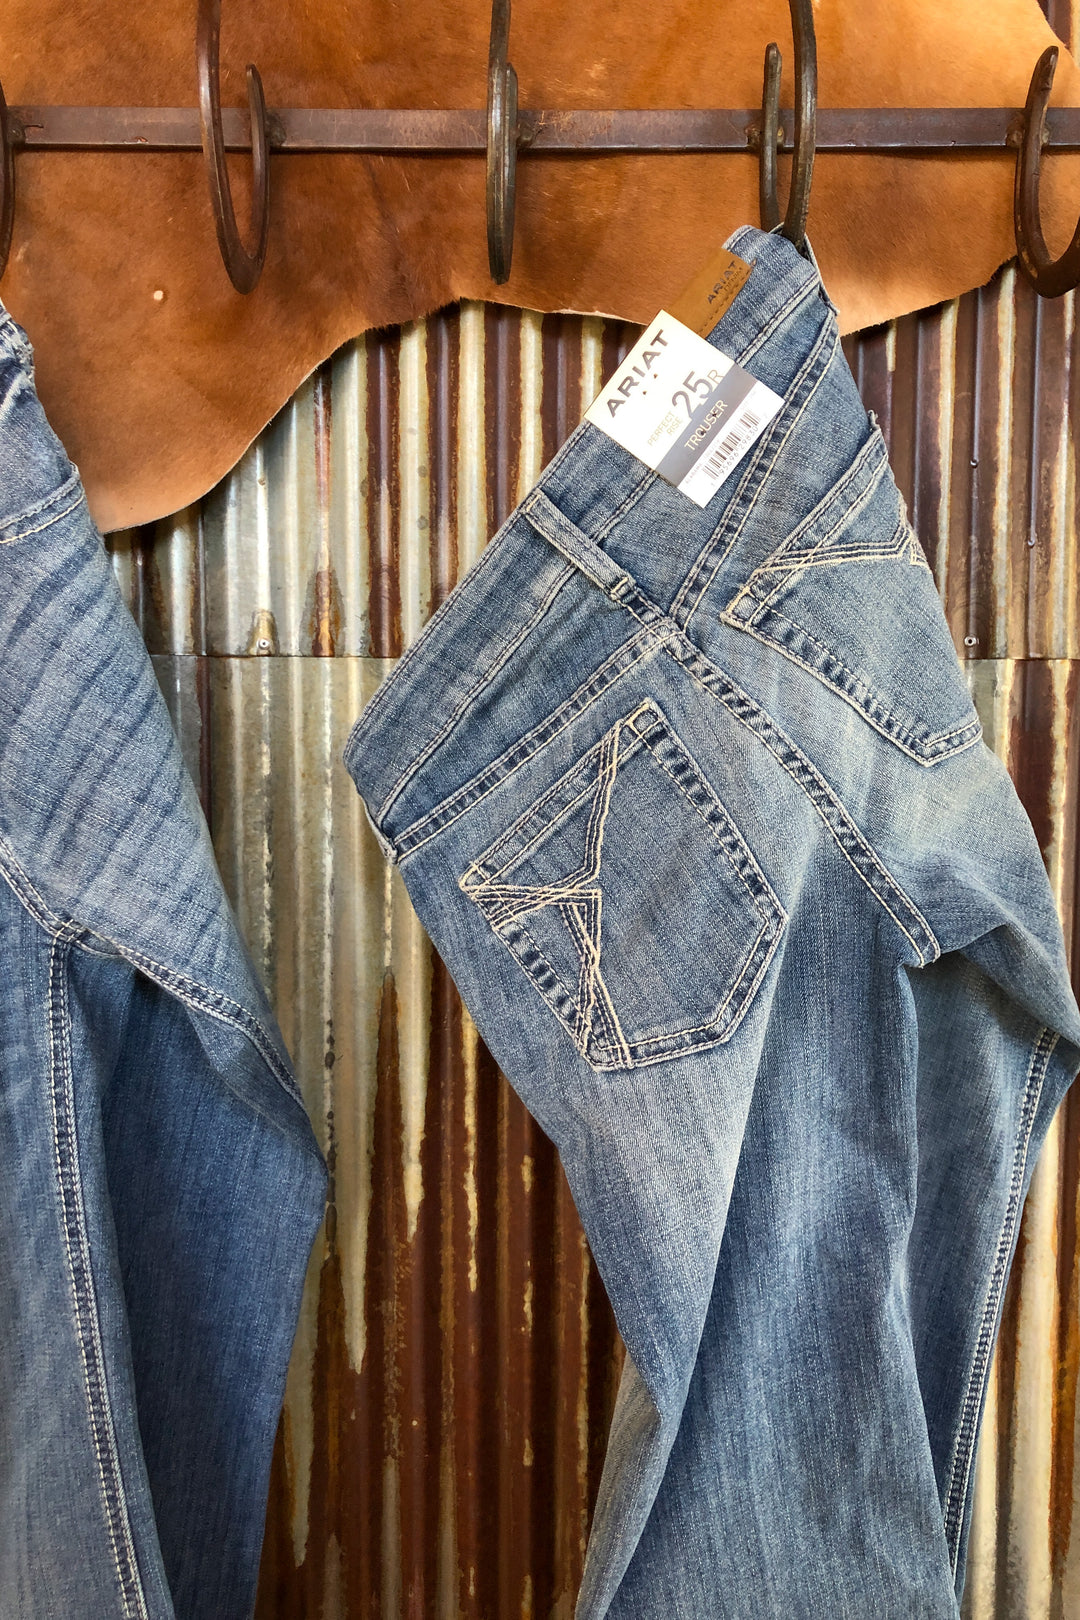 The Brazen Perfect Rise Trouser Jean